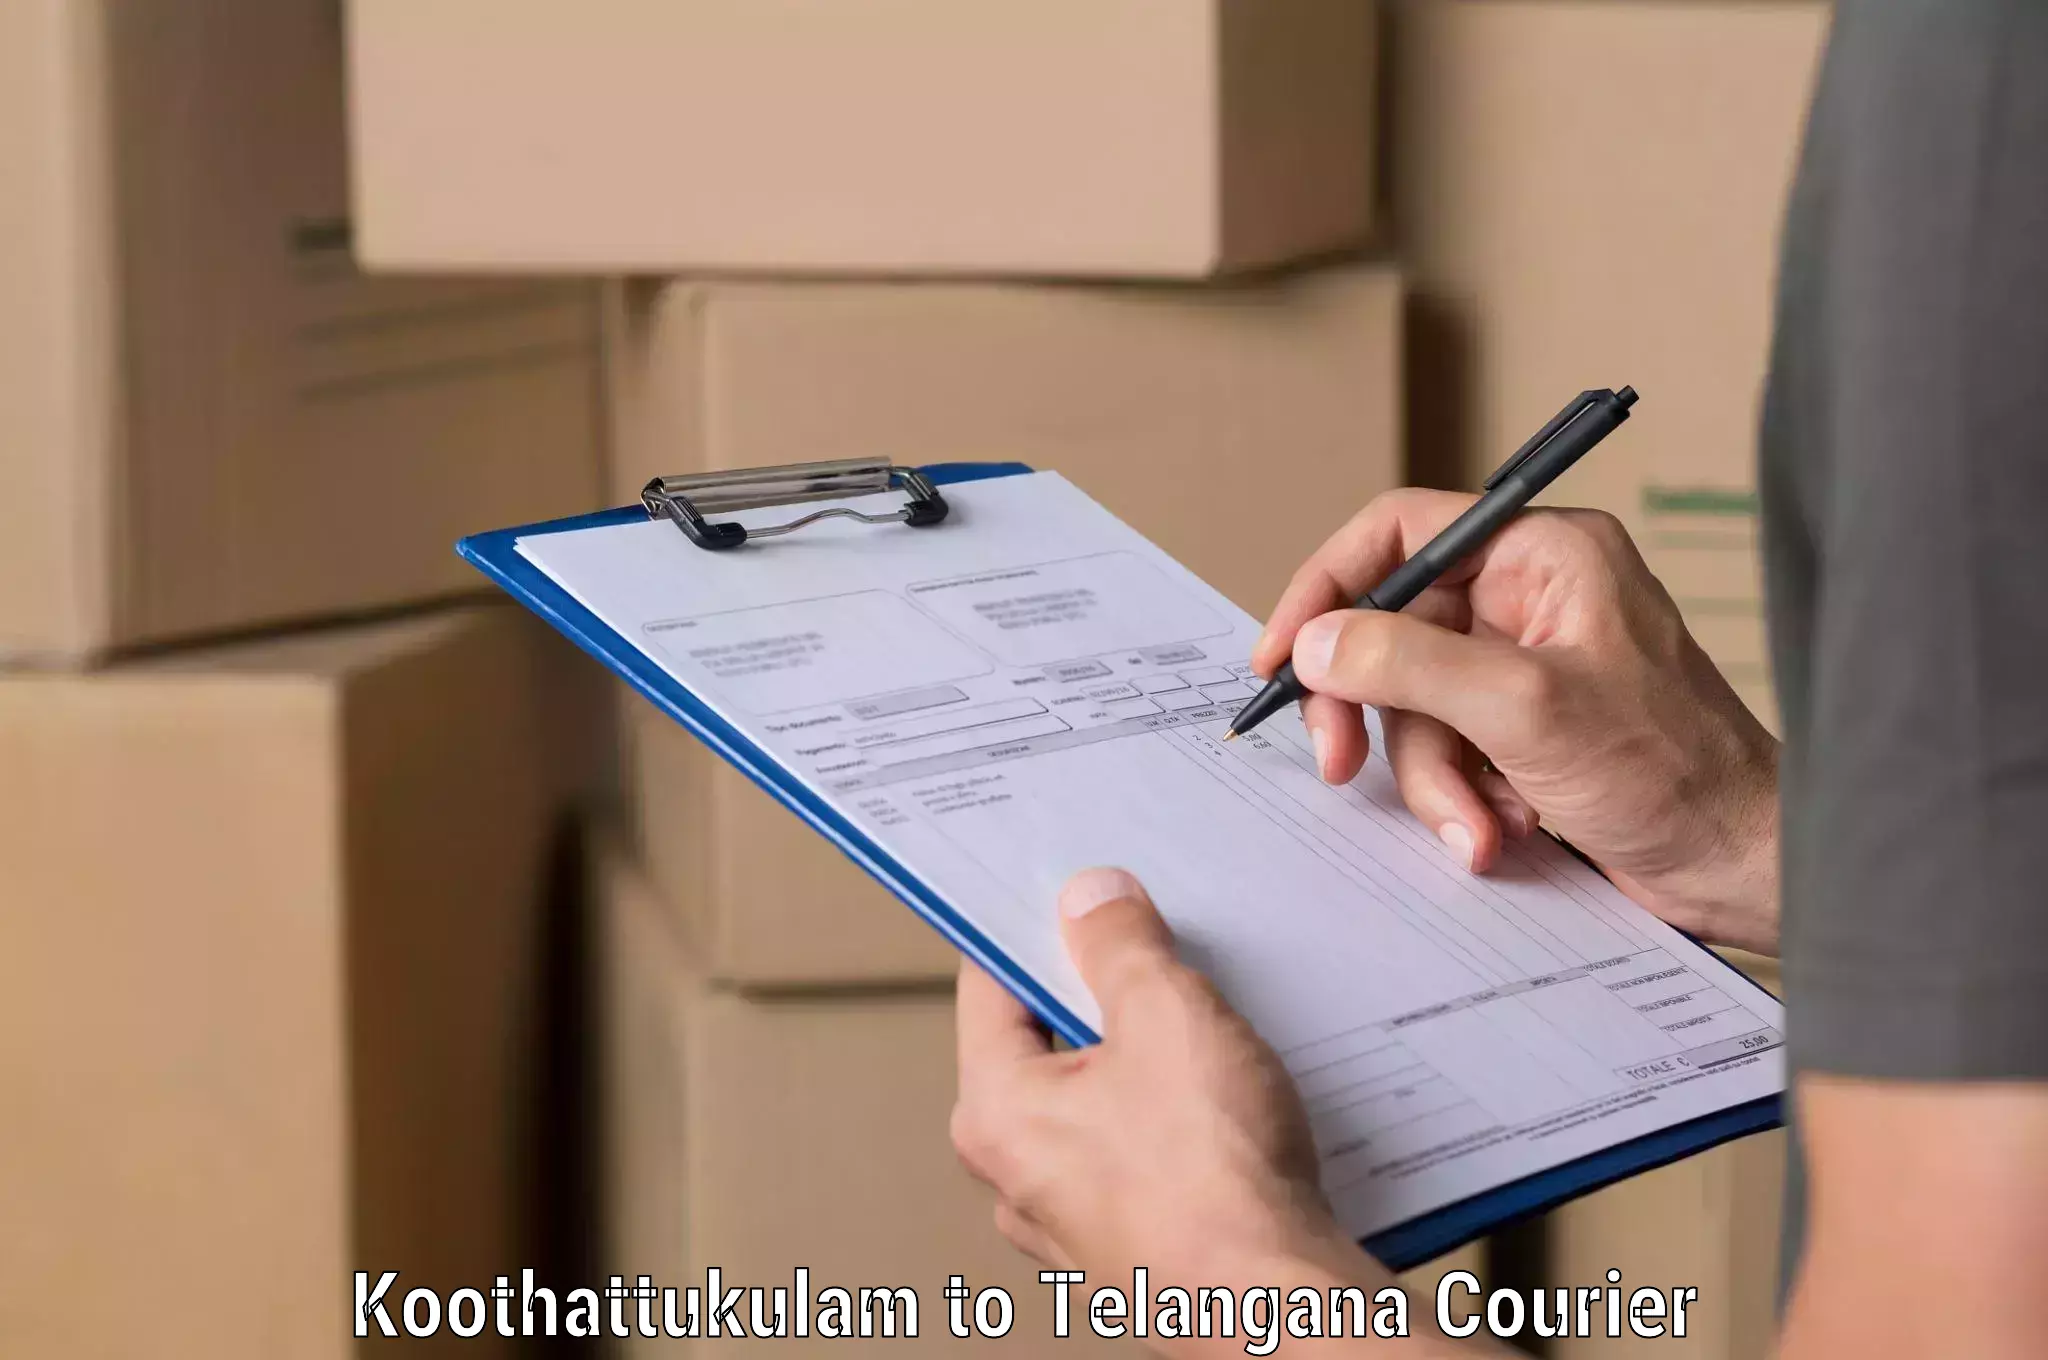 Shipping and handling Koothattukulam to Chegunta